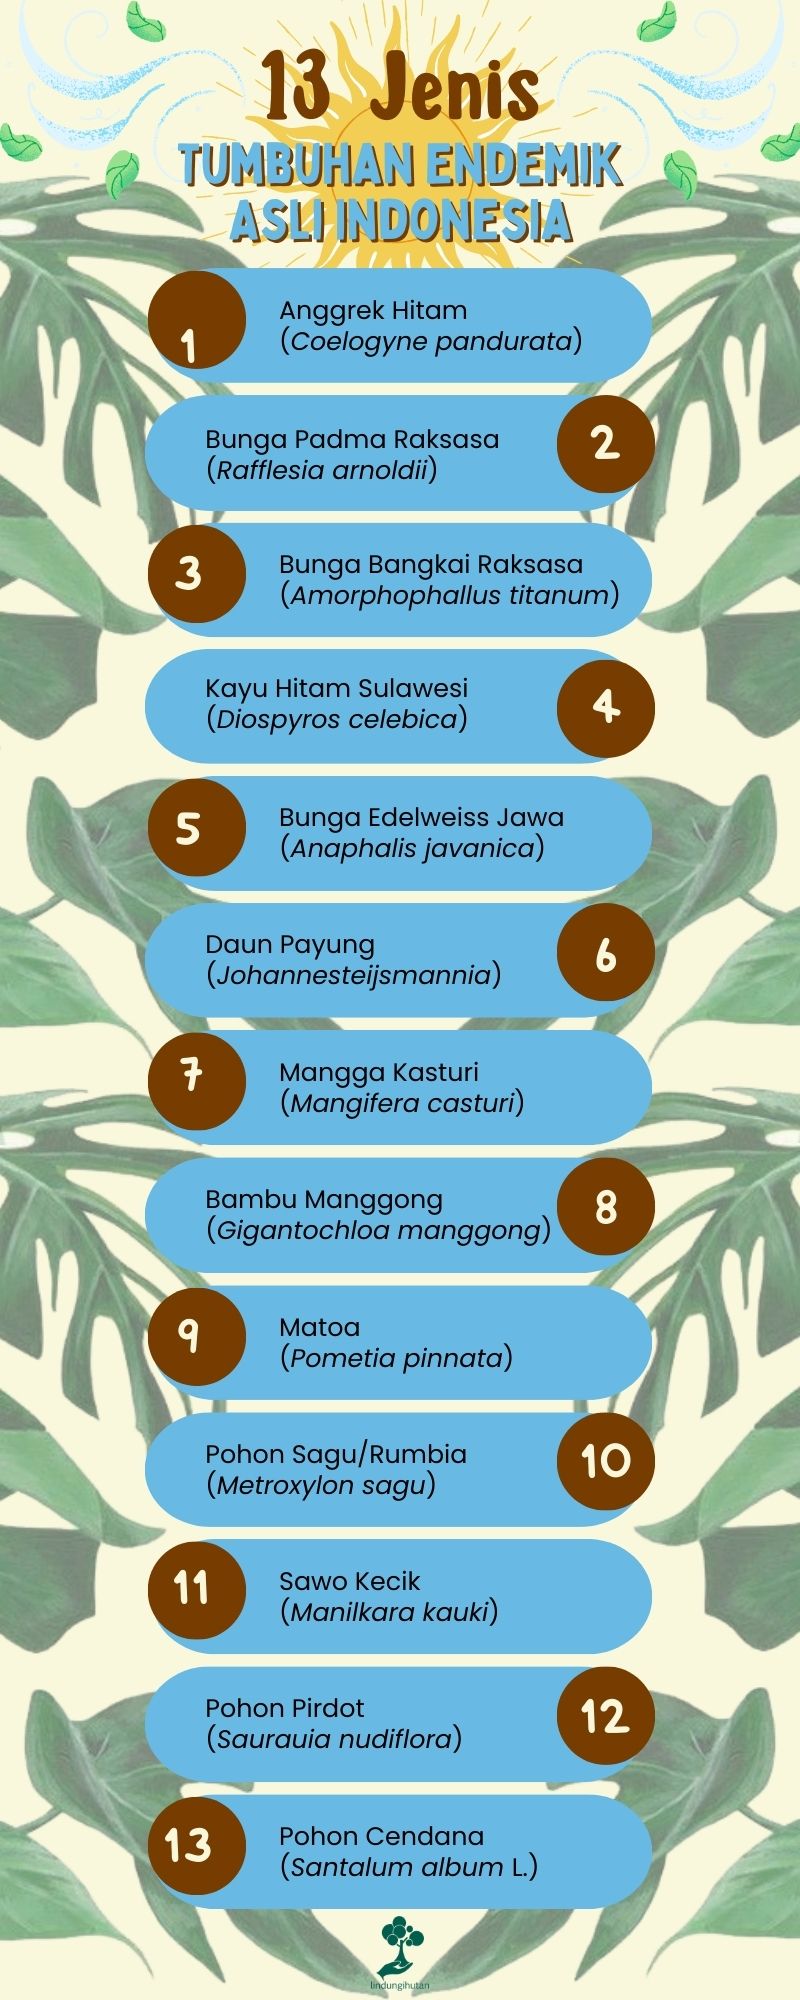 Tumbuhan endemik asal Indonesia.